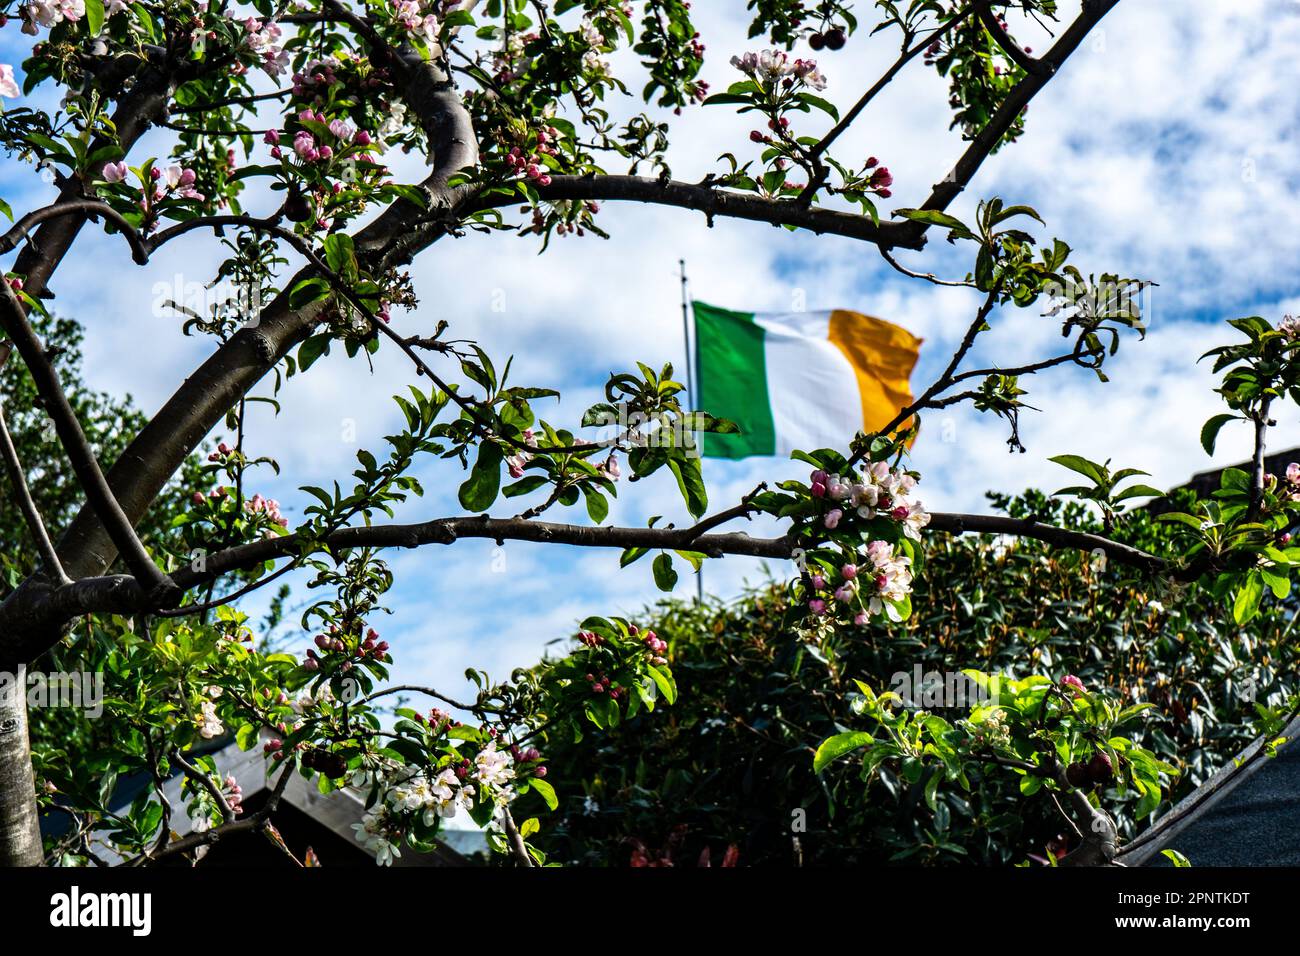 La bandiera irlandese Tricolor ha visto i fiori primaverili di Malus Evereste, il granchio di mela. Foto Stock